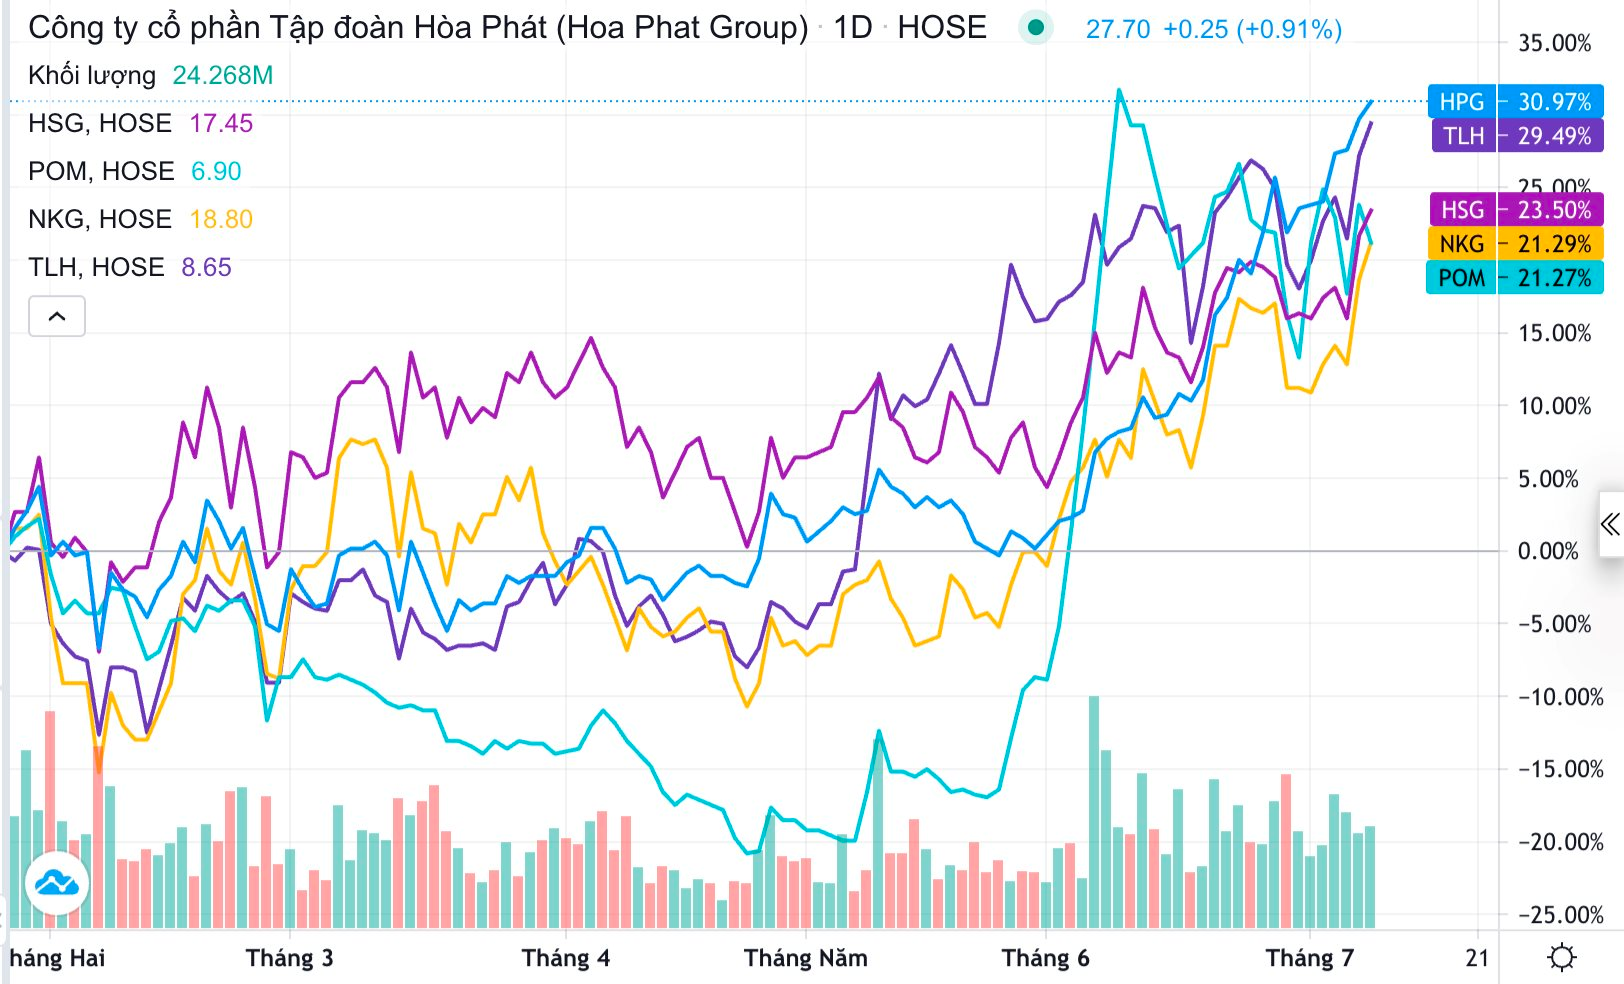 Hòa Phát mở lại lò cao, cổ phiếu HPG tăng 35% sau hơn 1 tháng, BVSC đánh giá: Vẫn chịu ảnh hưởng tiêu cực - Ảnh 1.